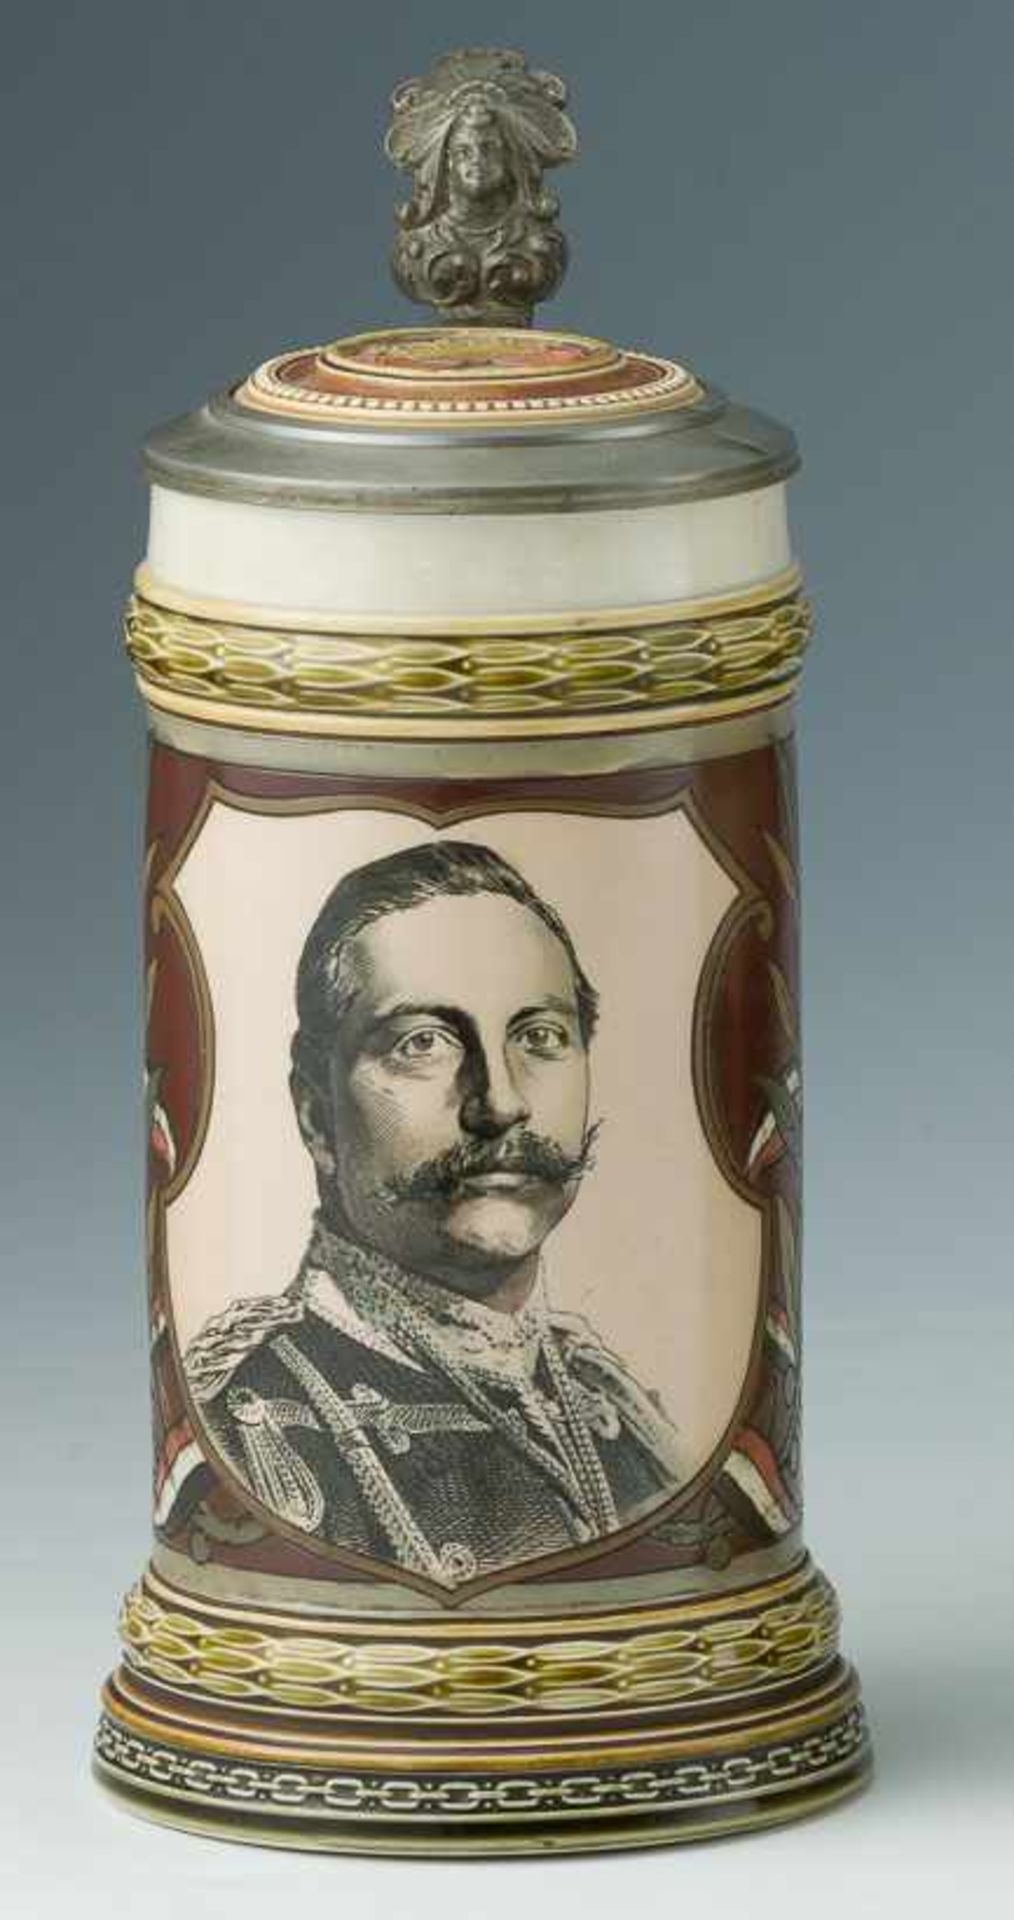 Bierhumpen mit Bildnis Kaiser Wilhelm II.Mettlach, um 18881/2 l. Feinsteinzeug, staffiert in